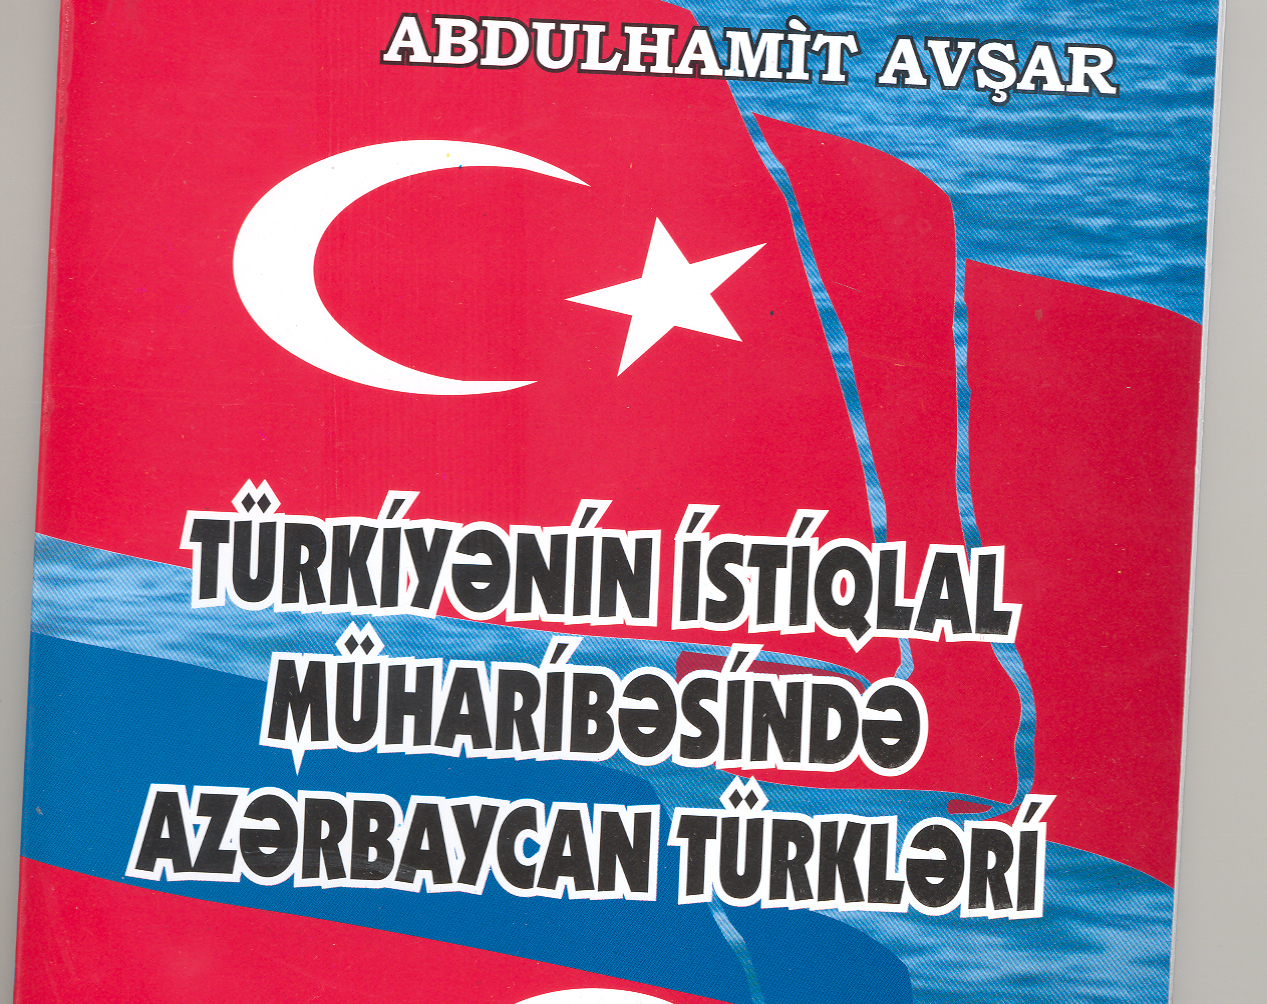 Книга, подтверждающая турецко-азербайджанскую дружбу